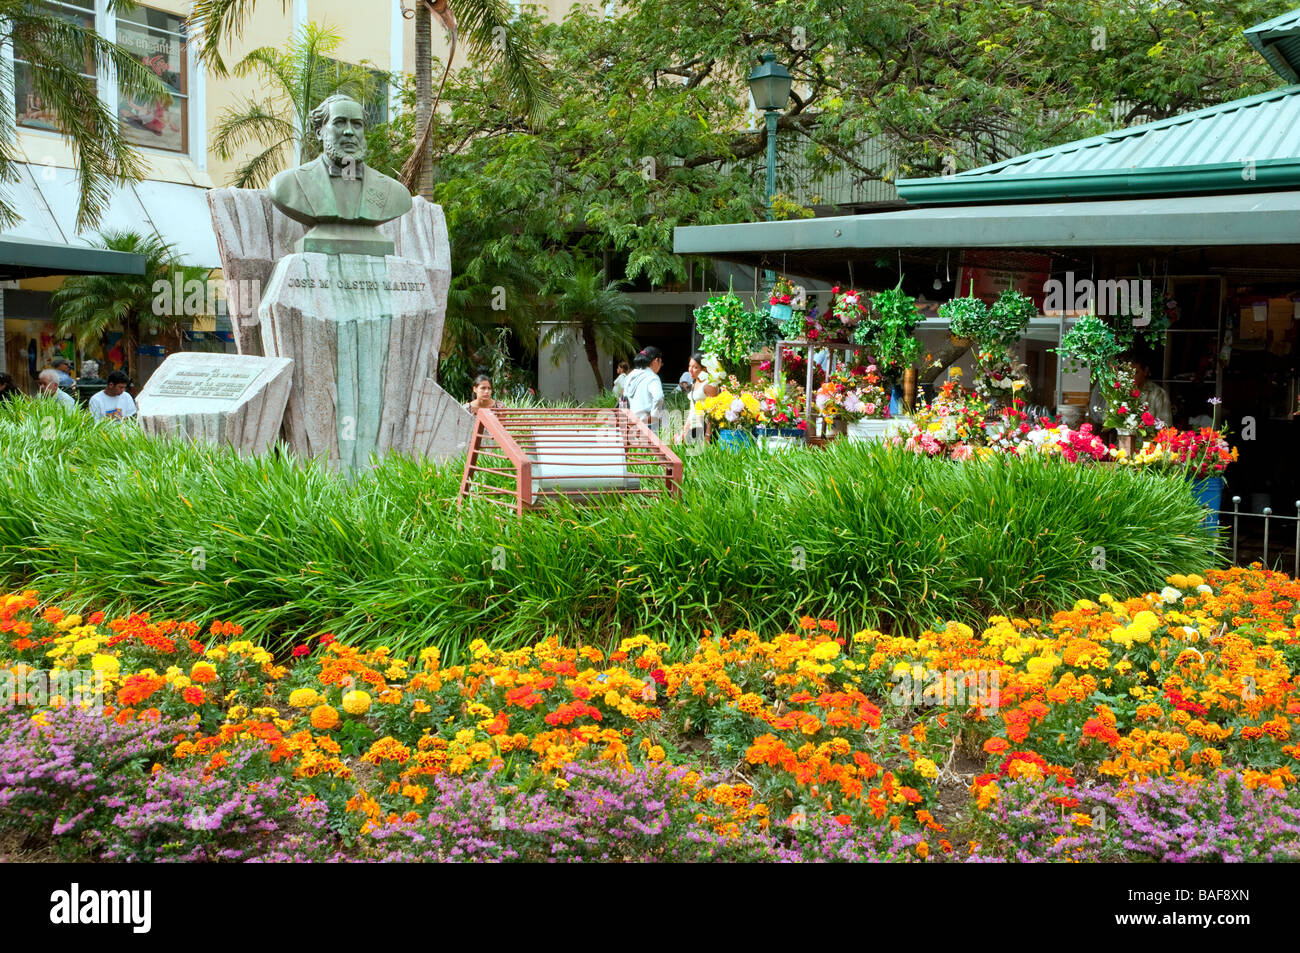 Una scultura di Jose Maria Castro Madriz e giardino di fiori in una piazza della città di San Jose, Costa Rica, America Centrale Foto Stock